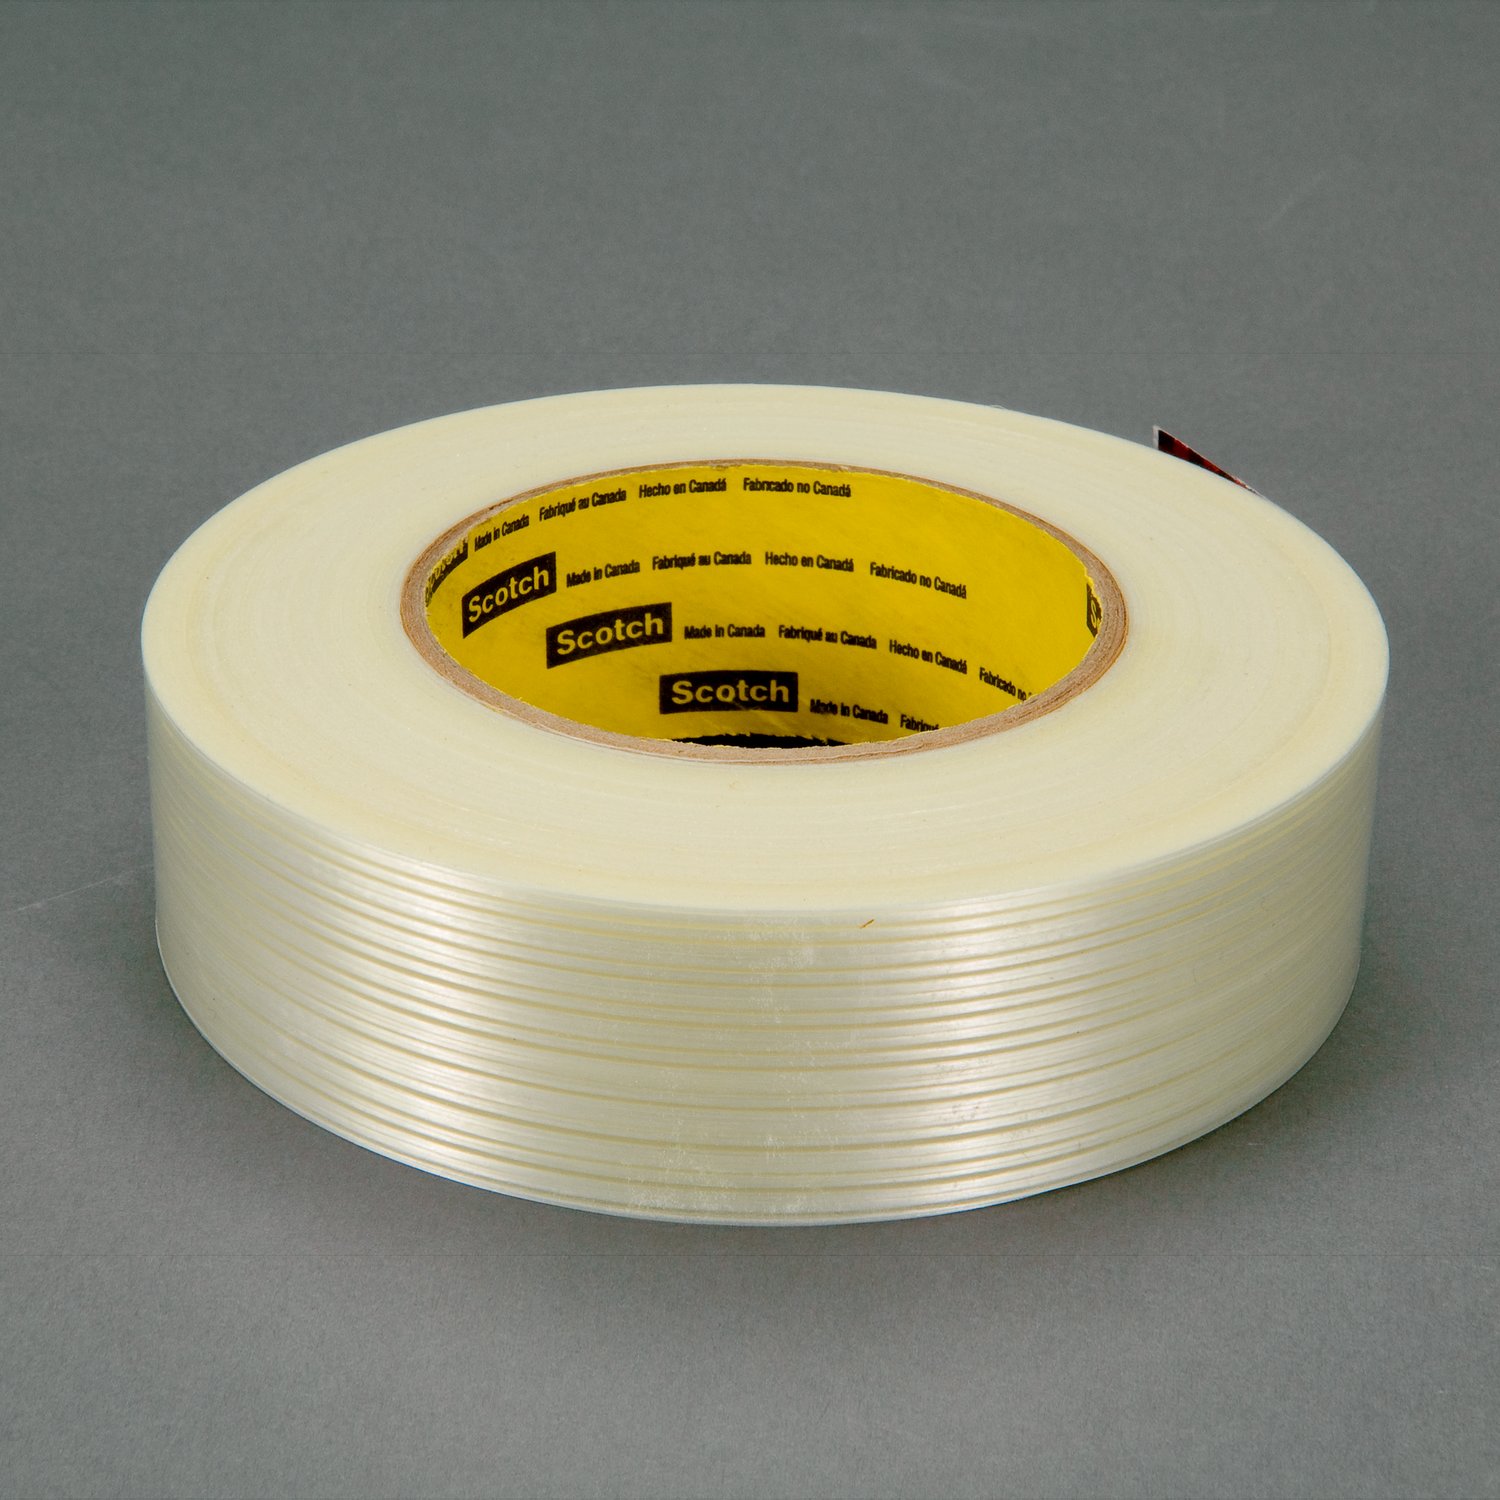 7000137919 - Scotch Filament Tape 8916V, Clear, 96 mm x 55 m, 6.8 mil, 64 rolls per
case